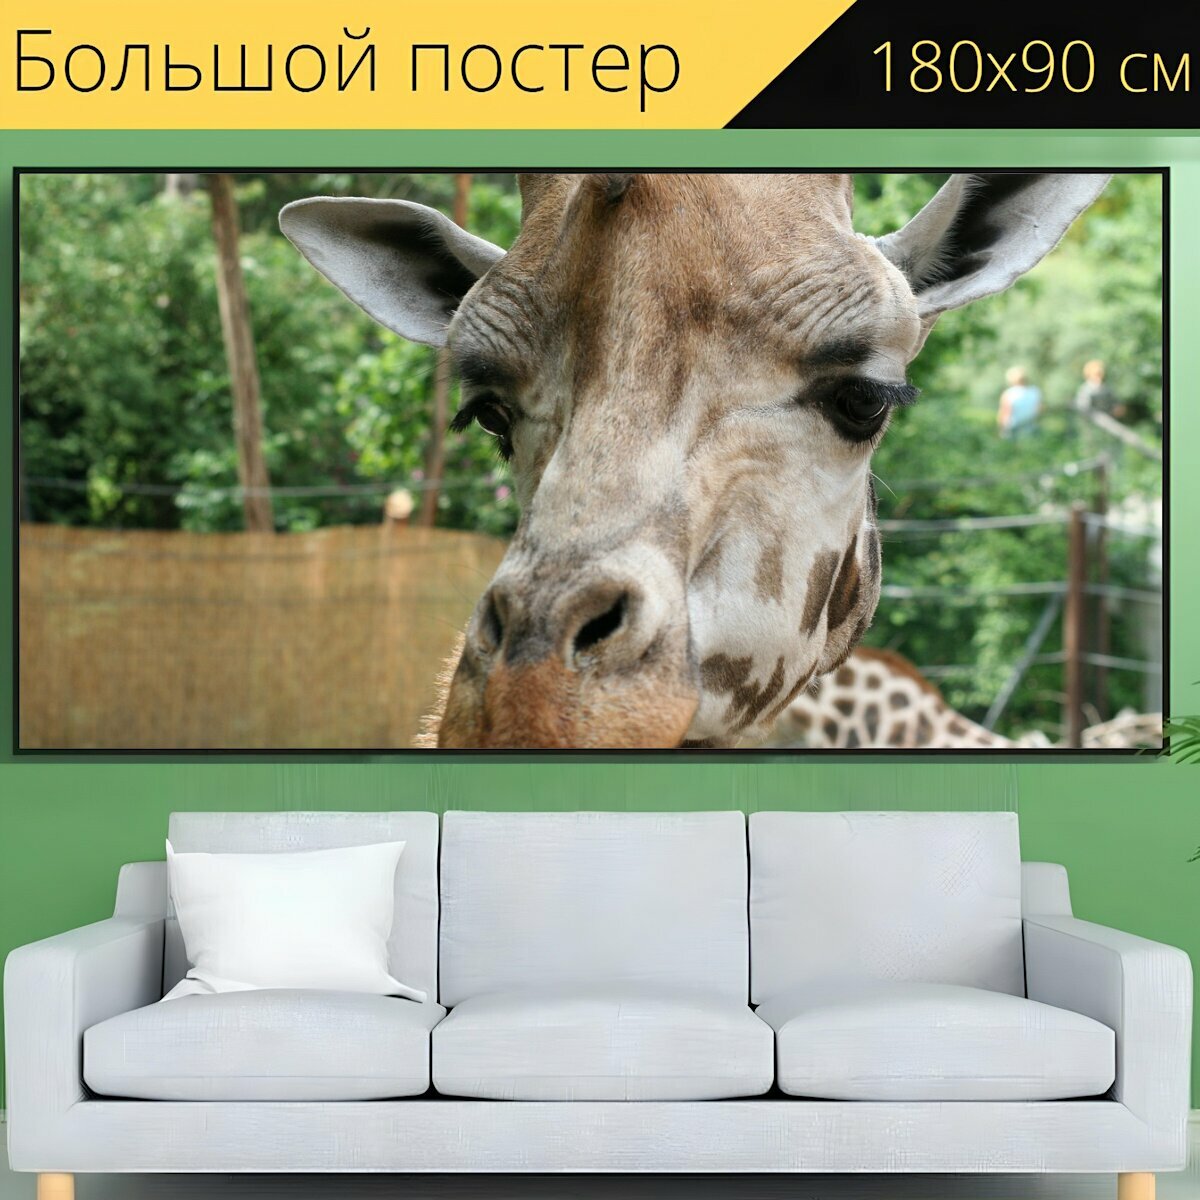 Большой постер "Жирафа, голова, животное" 180 x 90 см. для интерьера